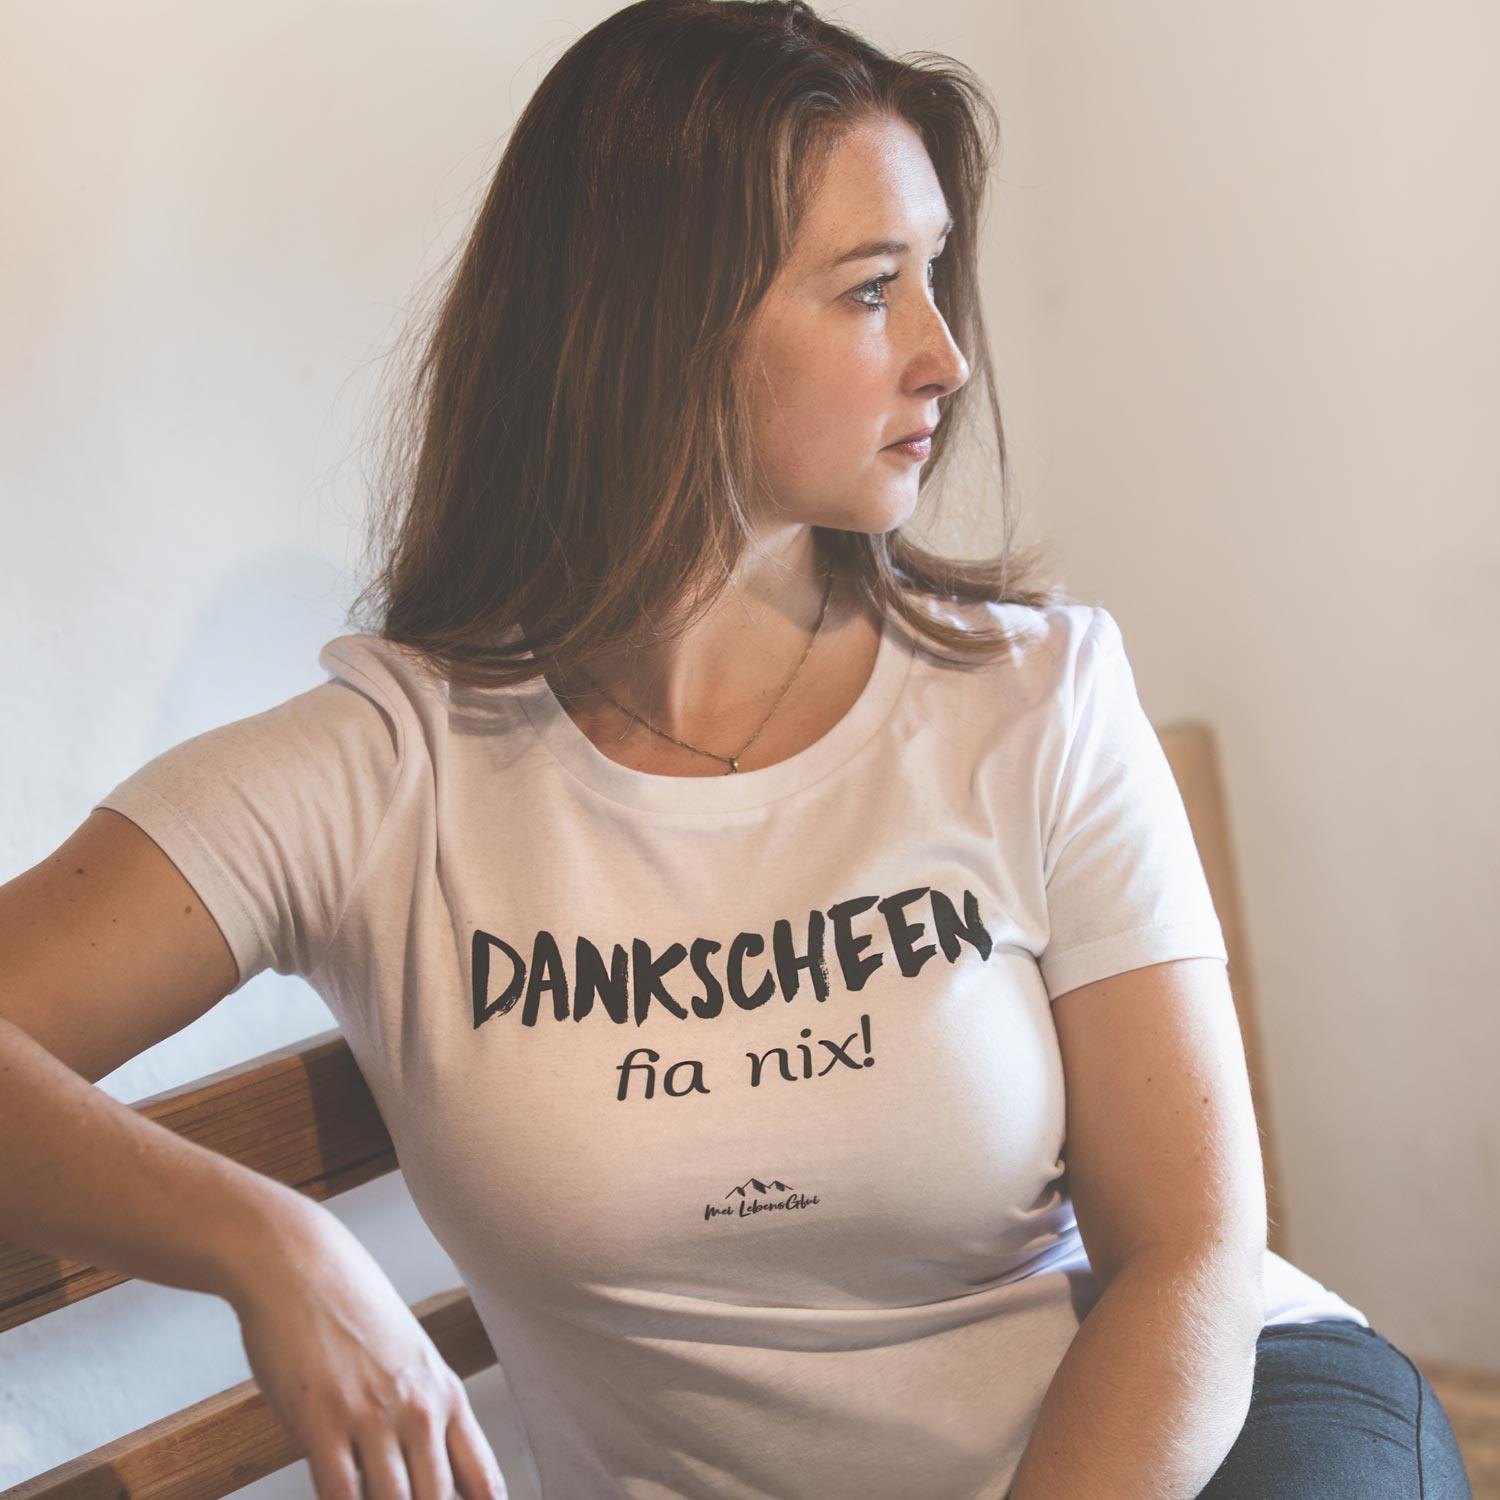 Damen T-Shirt "Dankscheen - fia nix!" - bavariashop - mei LebensGfui